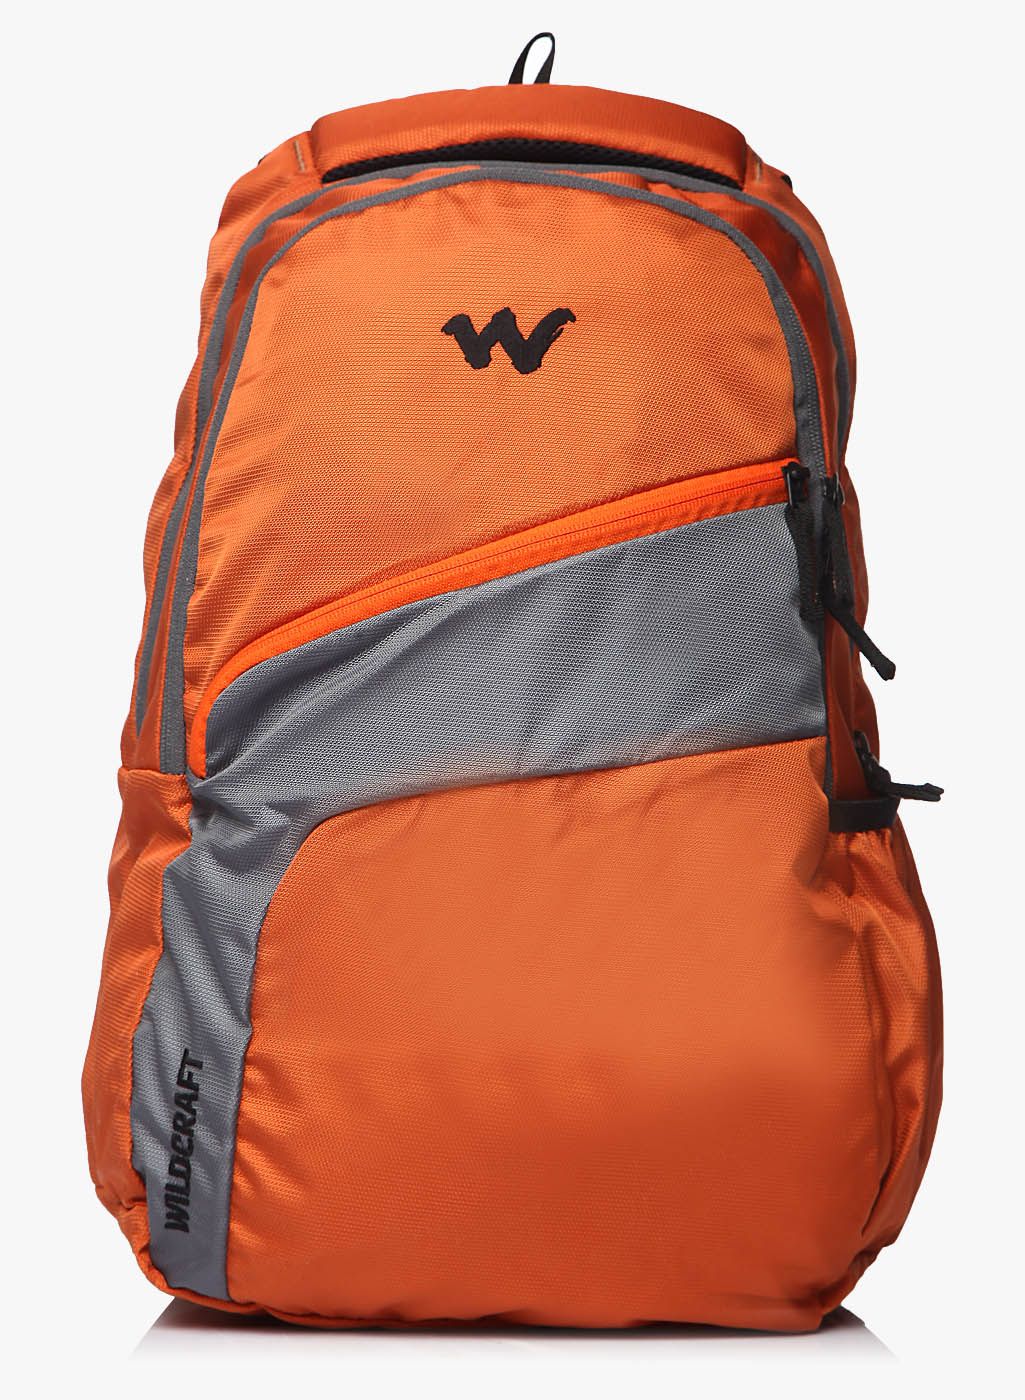 Virtuso Orange Backpack Price in India